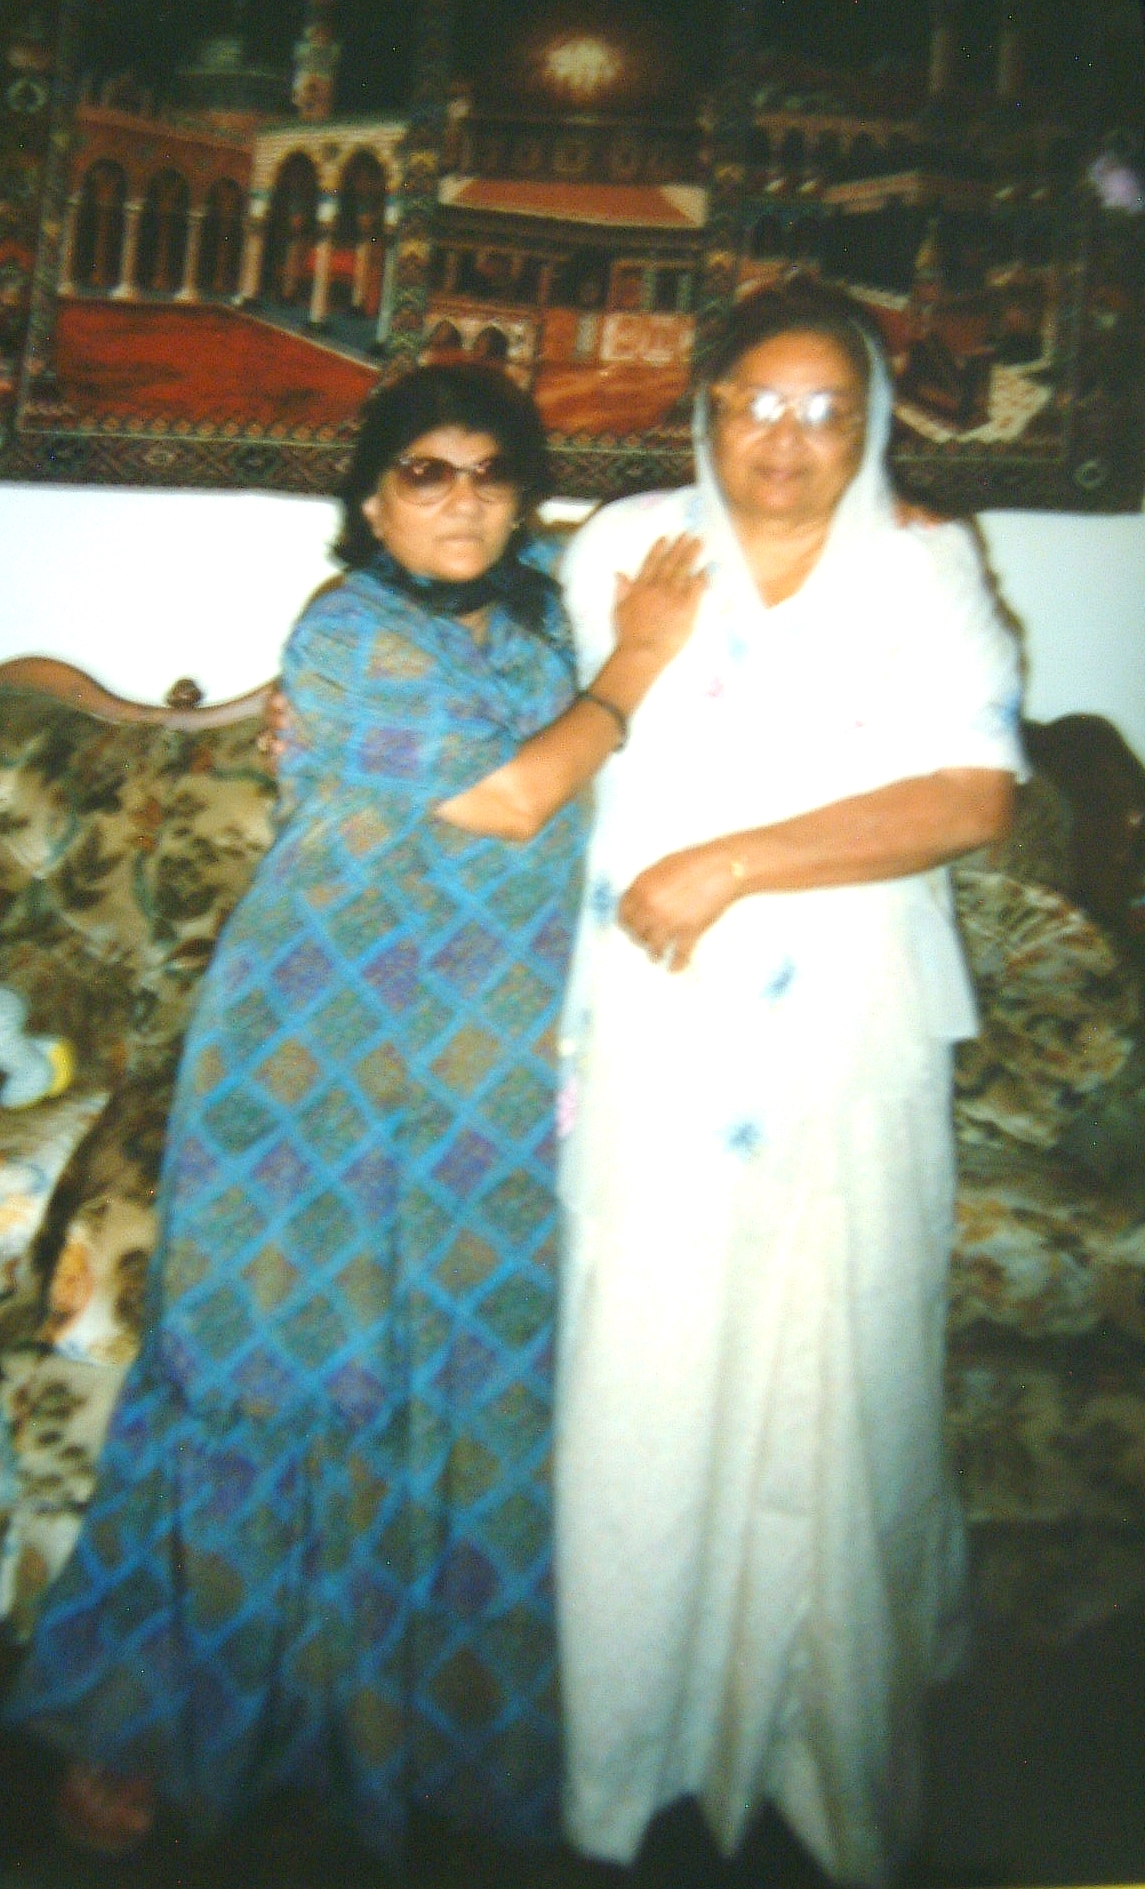 Hanifbai with jilubai